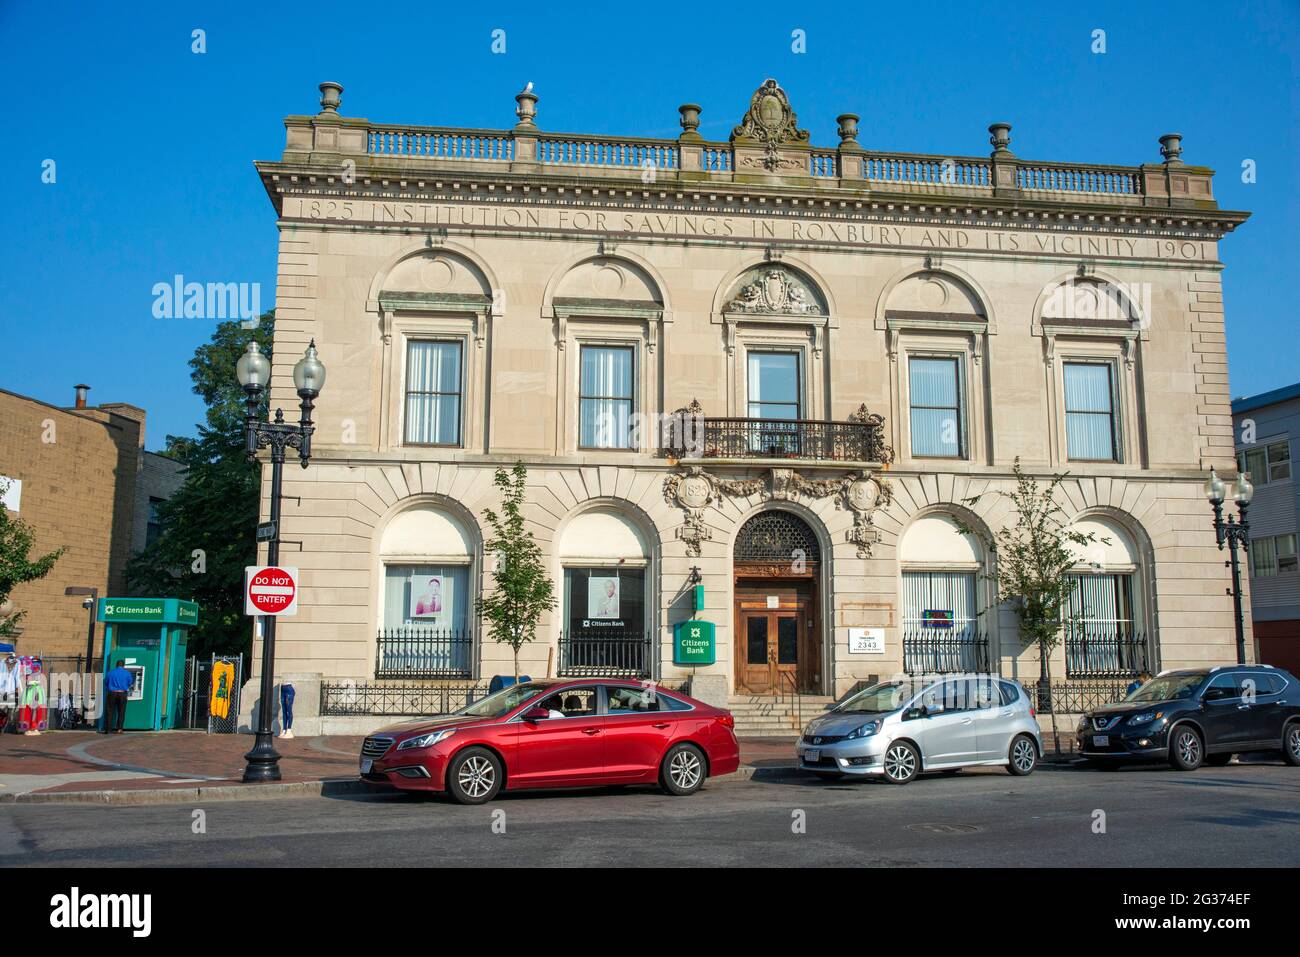 Citizens Bank, edificio histórico 1825 1901 en Roxbury Boston, Massachusetts, EE.UU Foto de stock